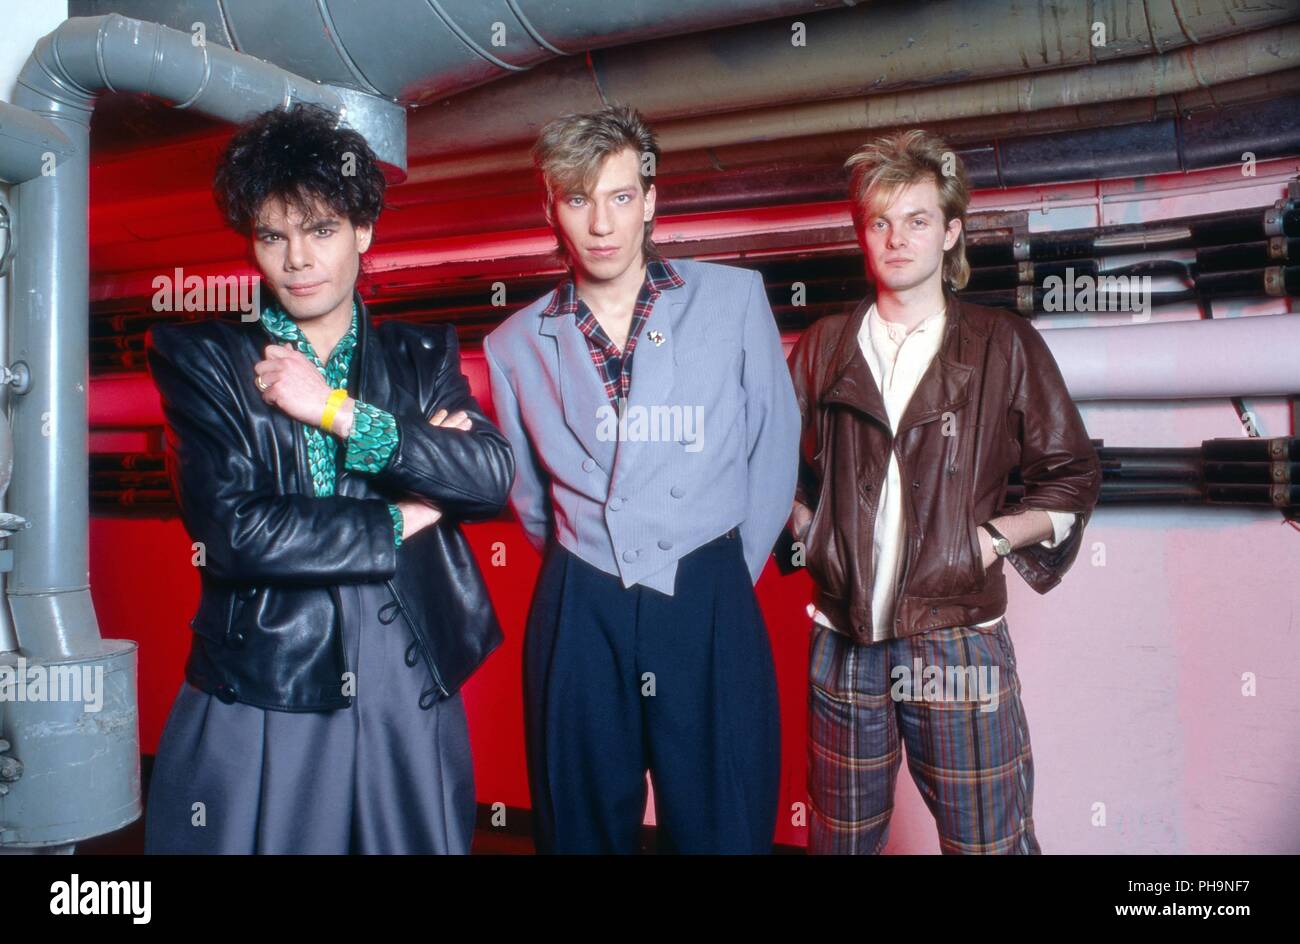 Alphaville", deutsche Synthie Pop Band, beim Fotoshooting vor einem Konzert  in Dortmund, Deutschland 1984. German synth pop band "Alphaville" strikin  Stock Photo - Alamy